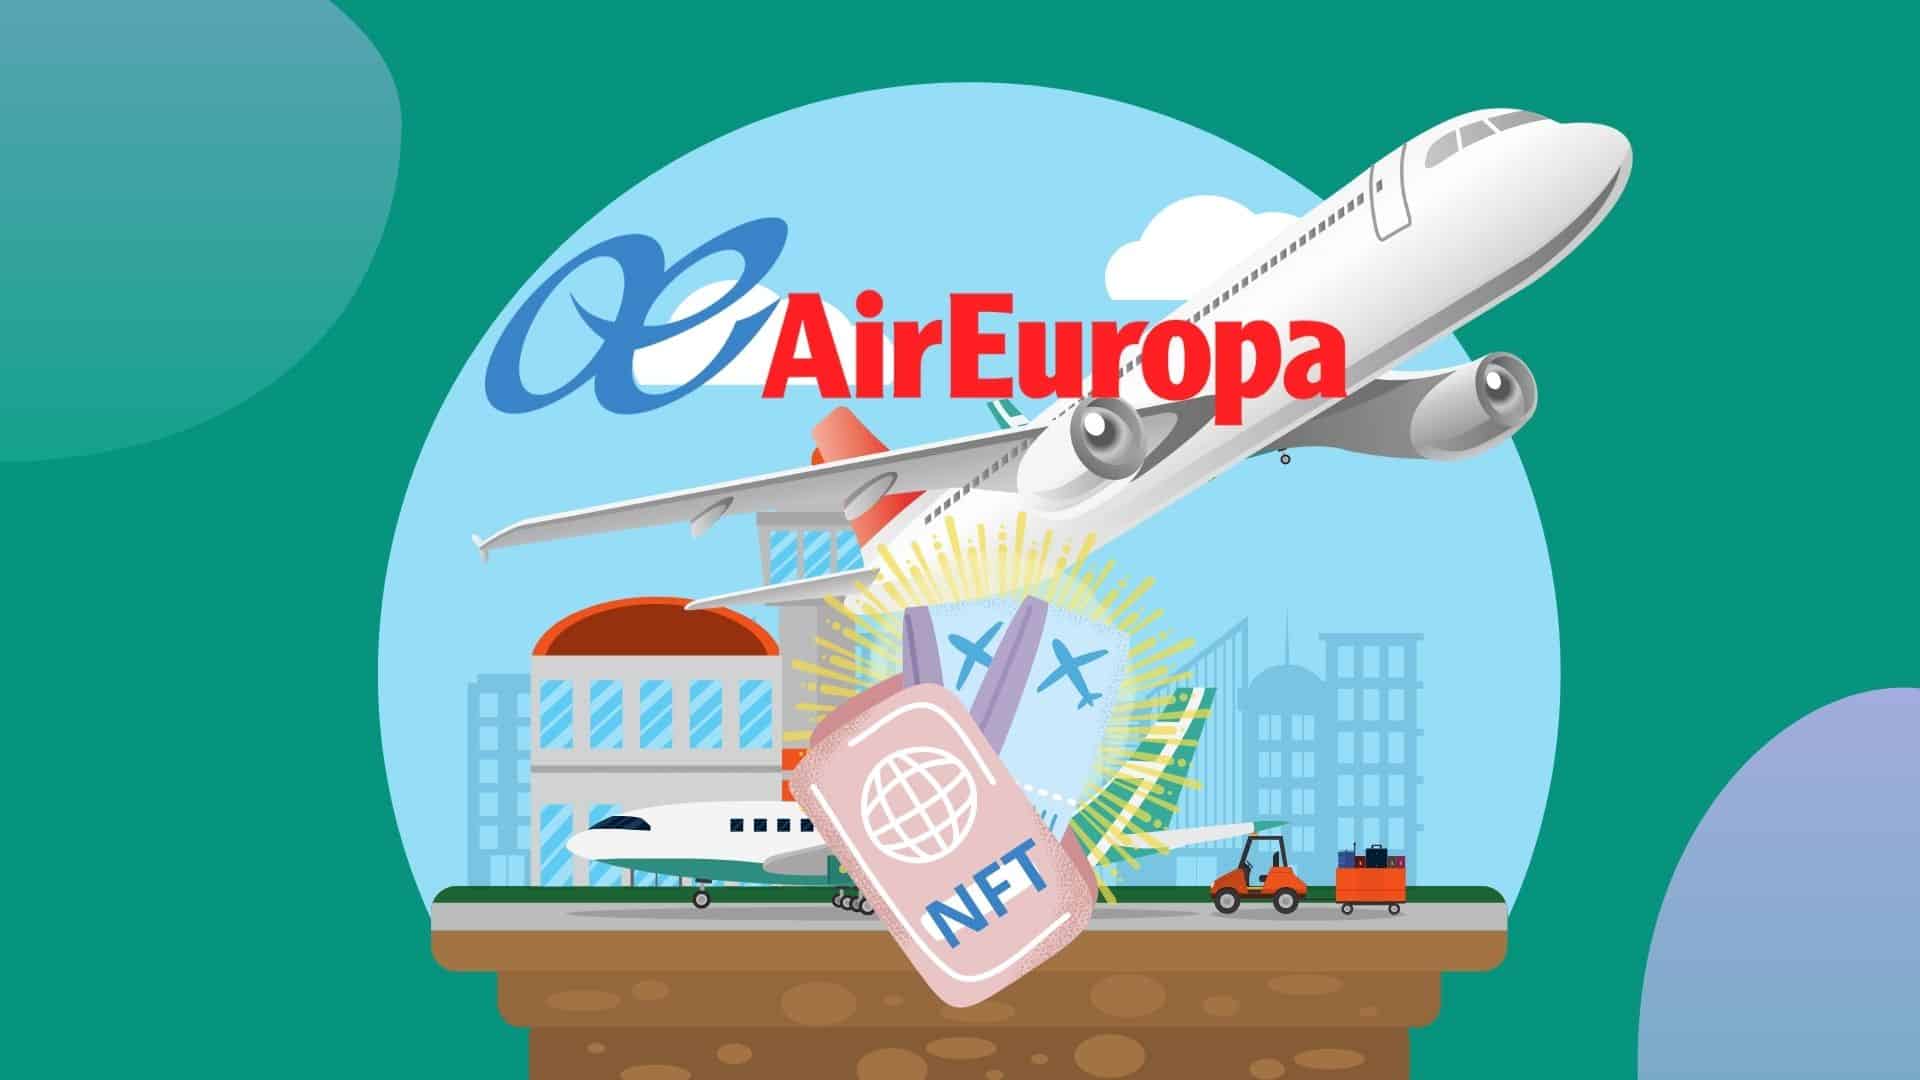 Ведущая авиакомпания Air Europa представила первую в мире серию NFT-билетов